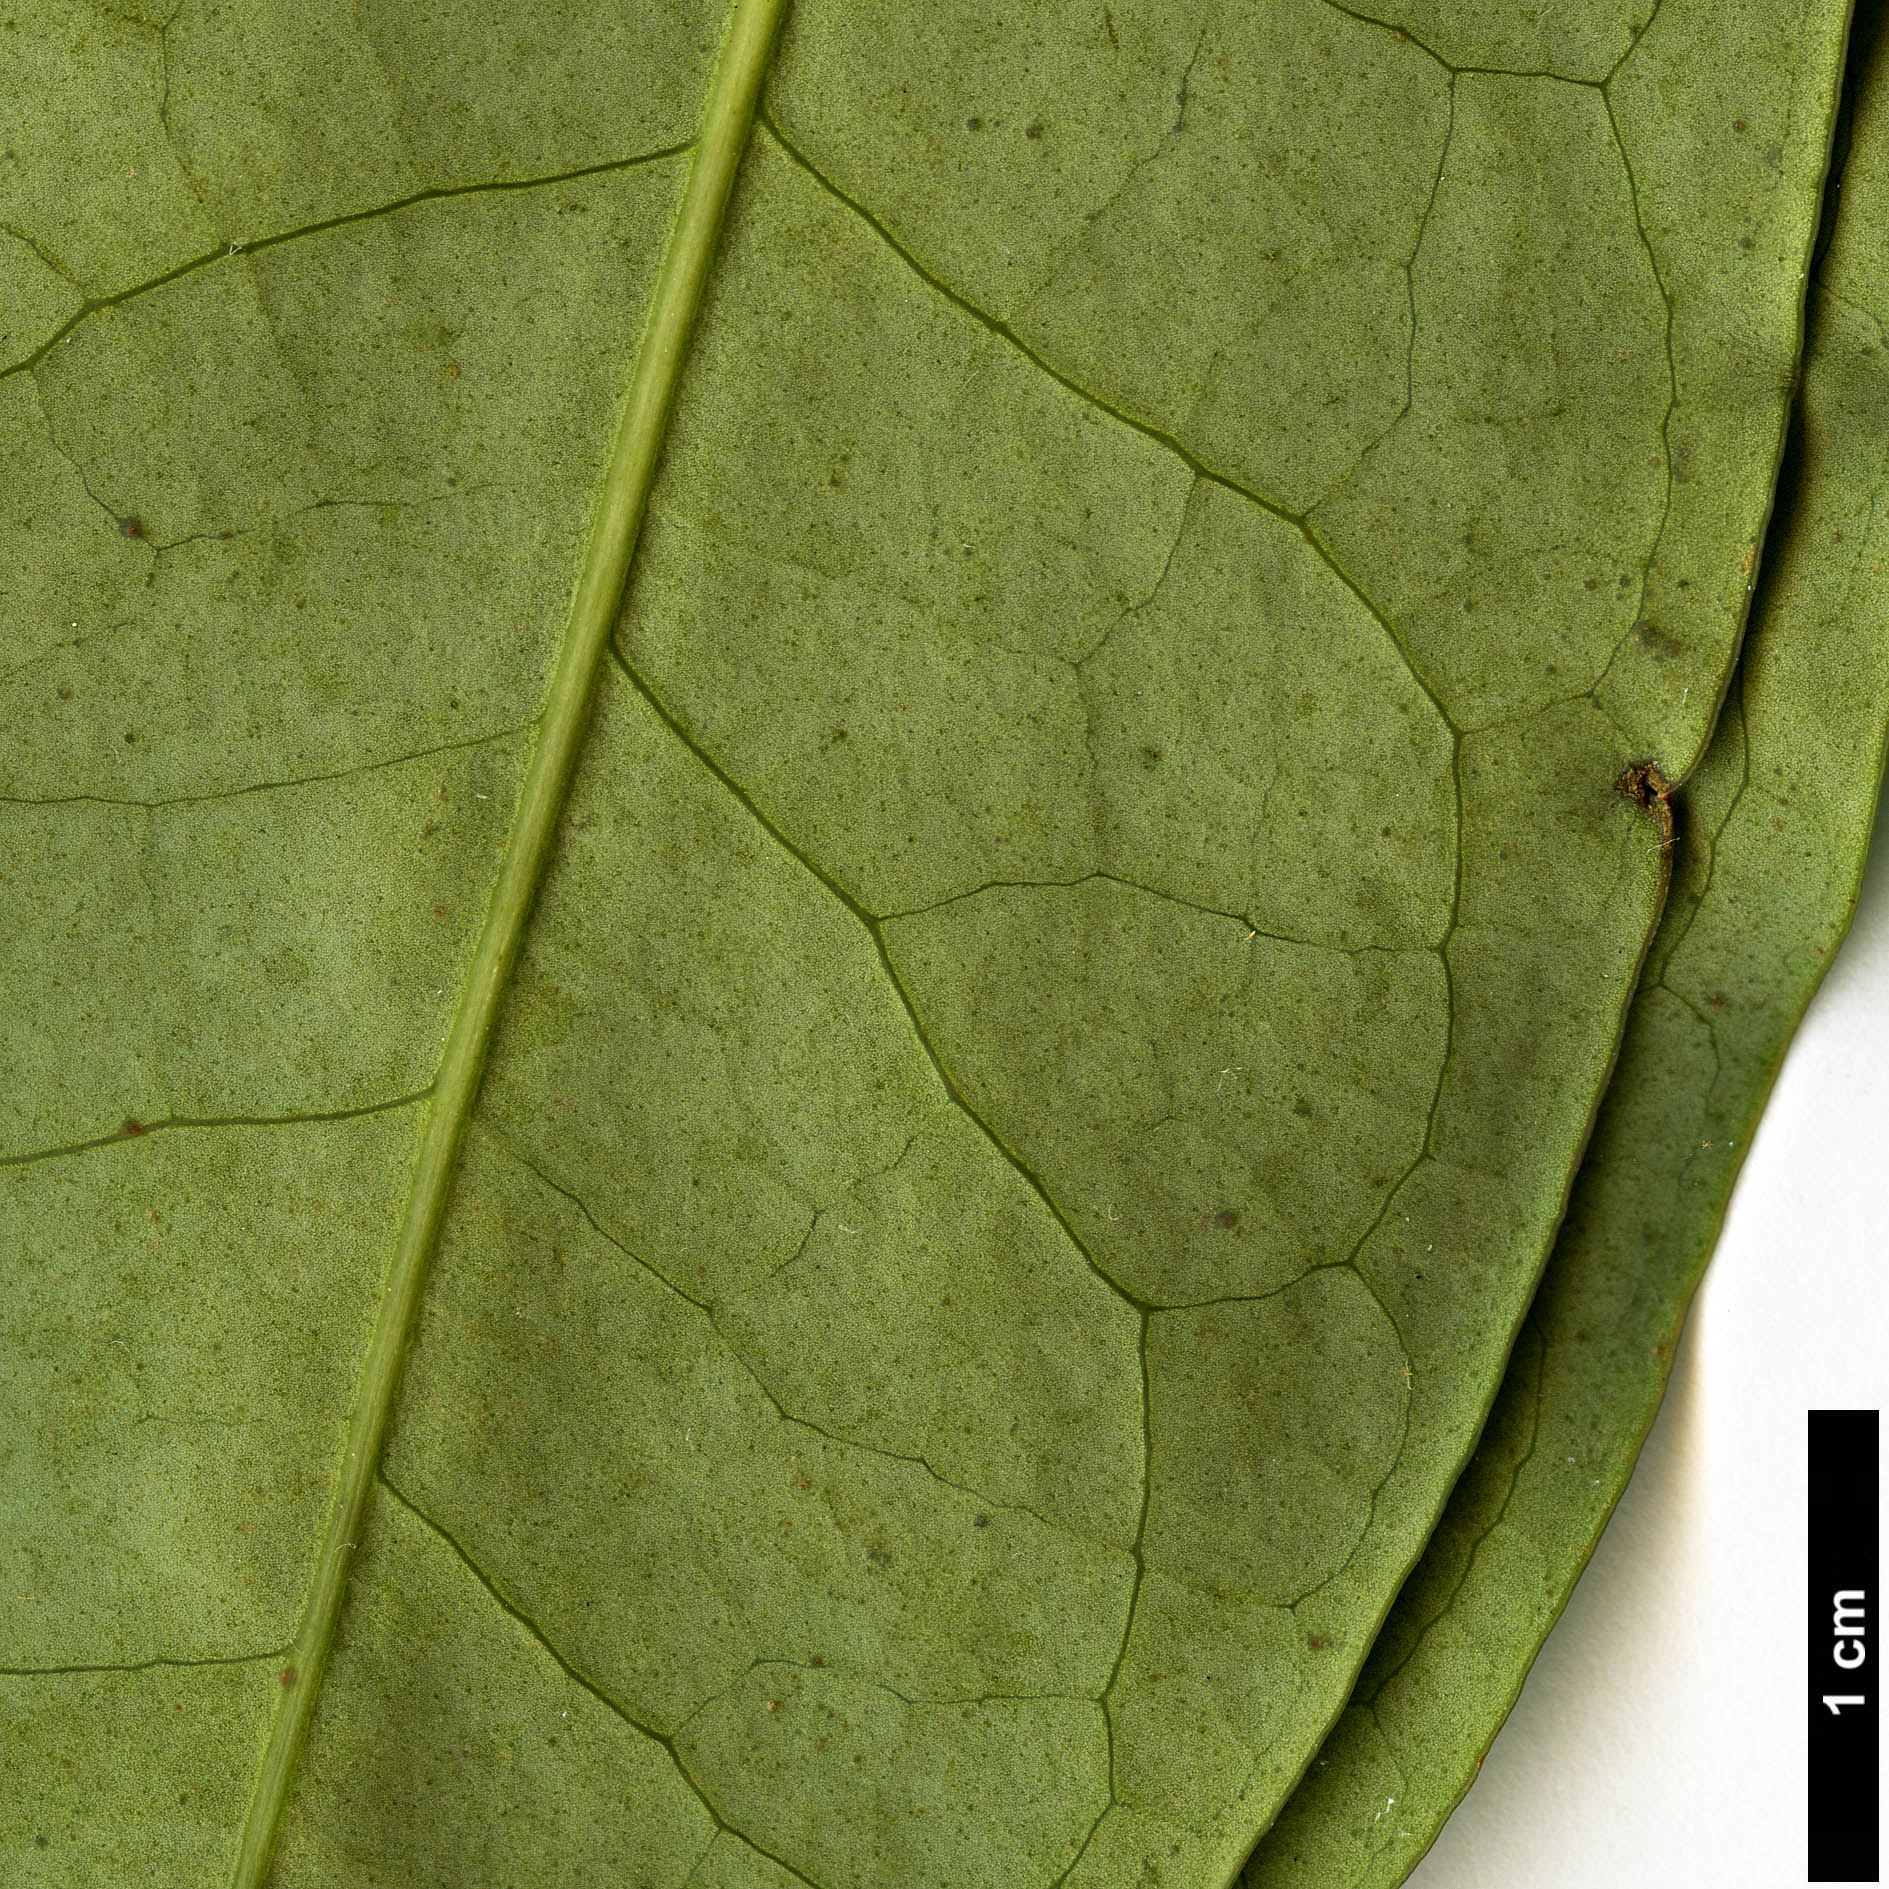 High resolution image: Family: Araliaceae - Genus: Schefflera - Taxon: shweliensis